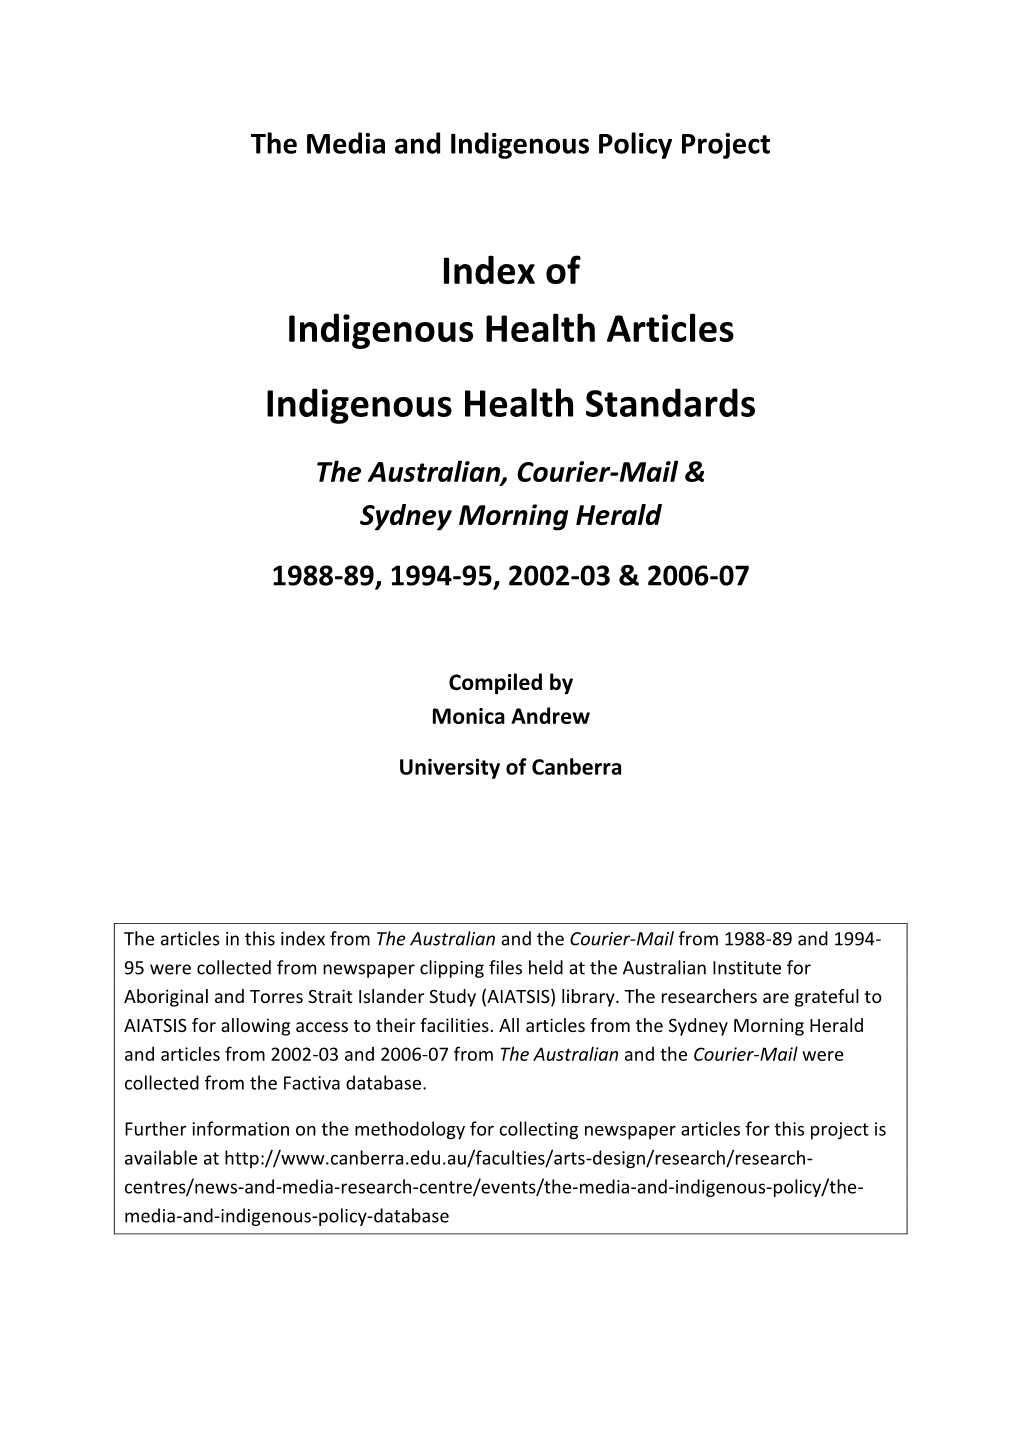 Keyword: Indigenous Health Standards